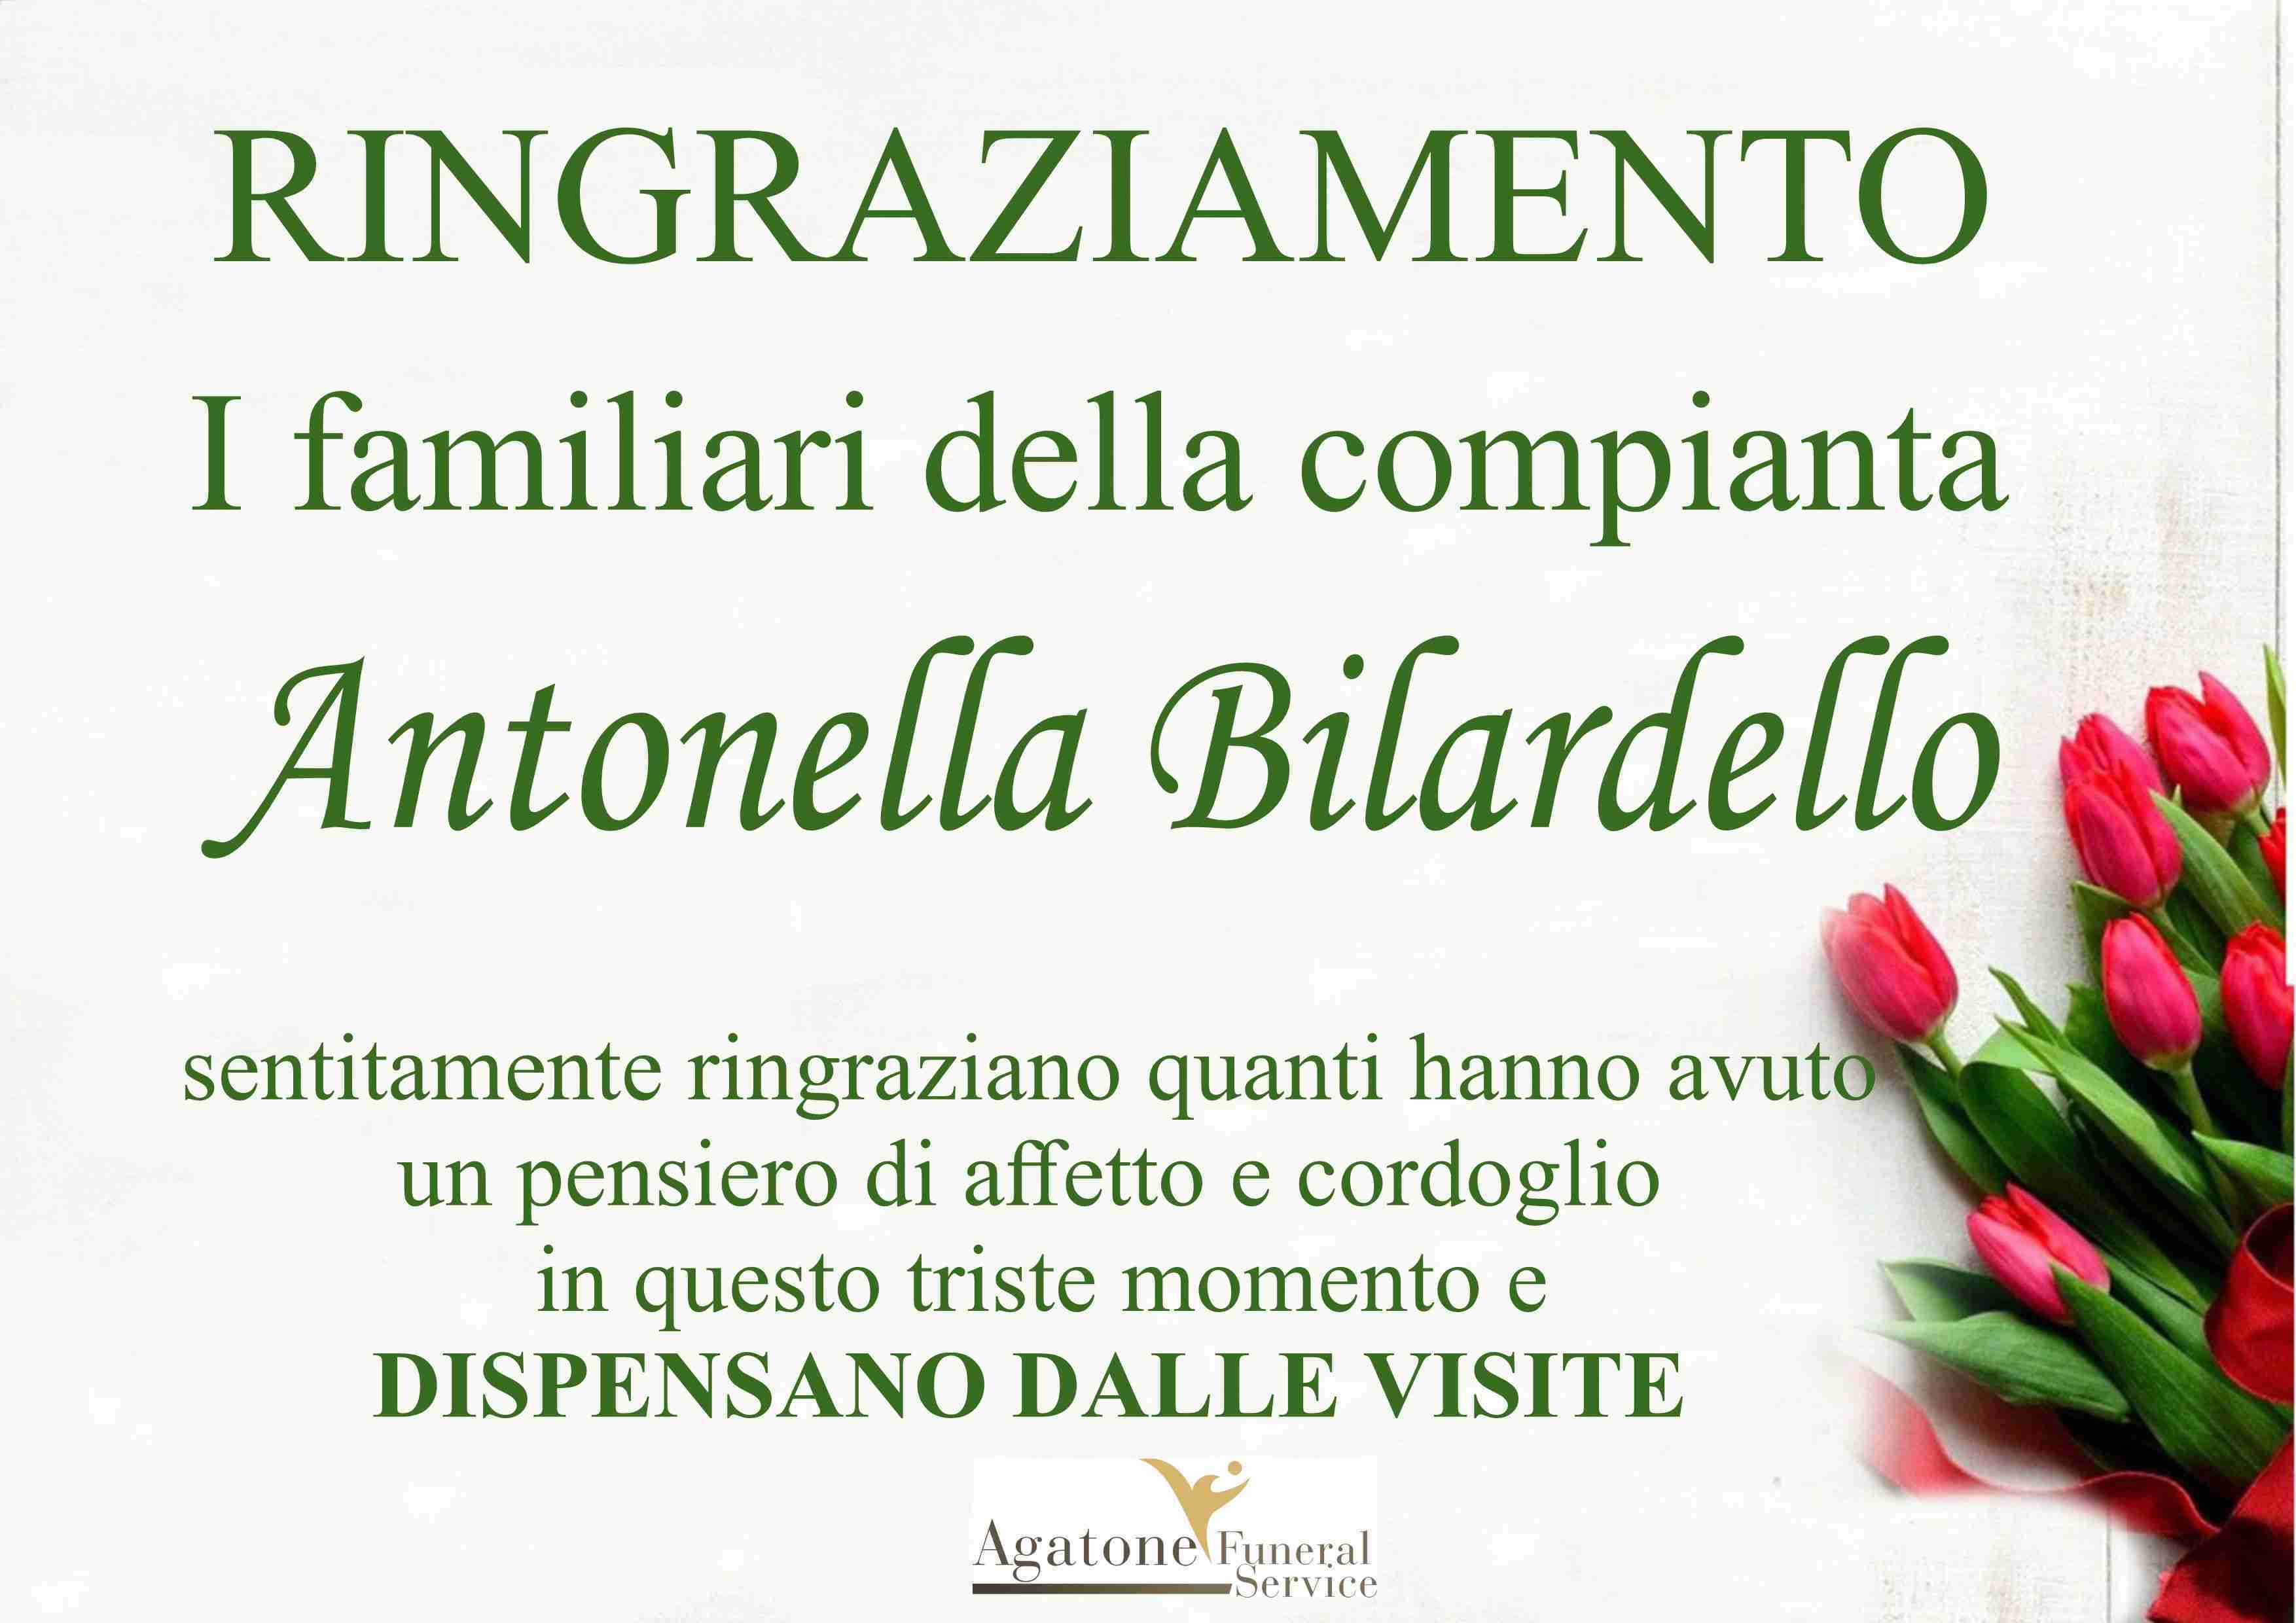 Antonella Bilardello